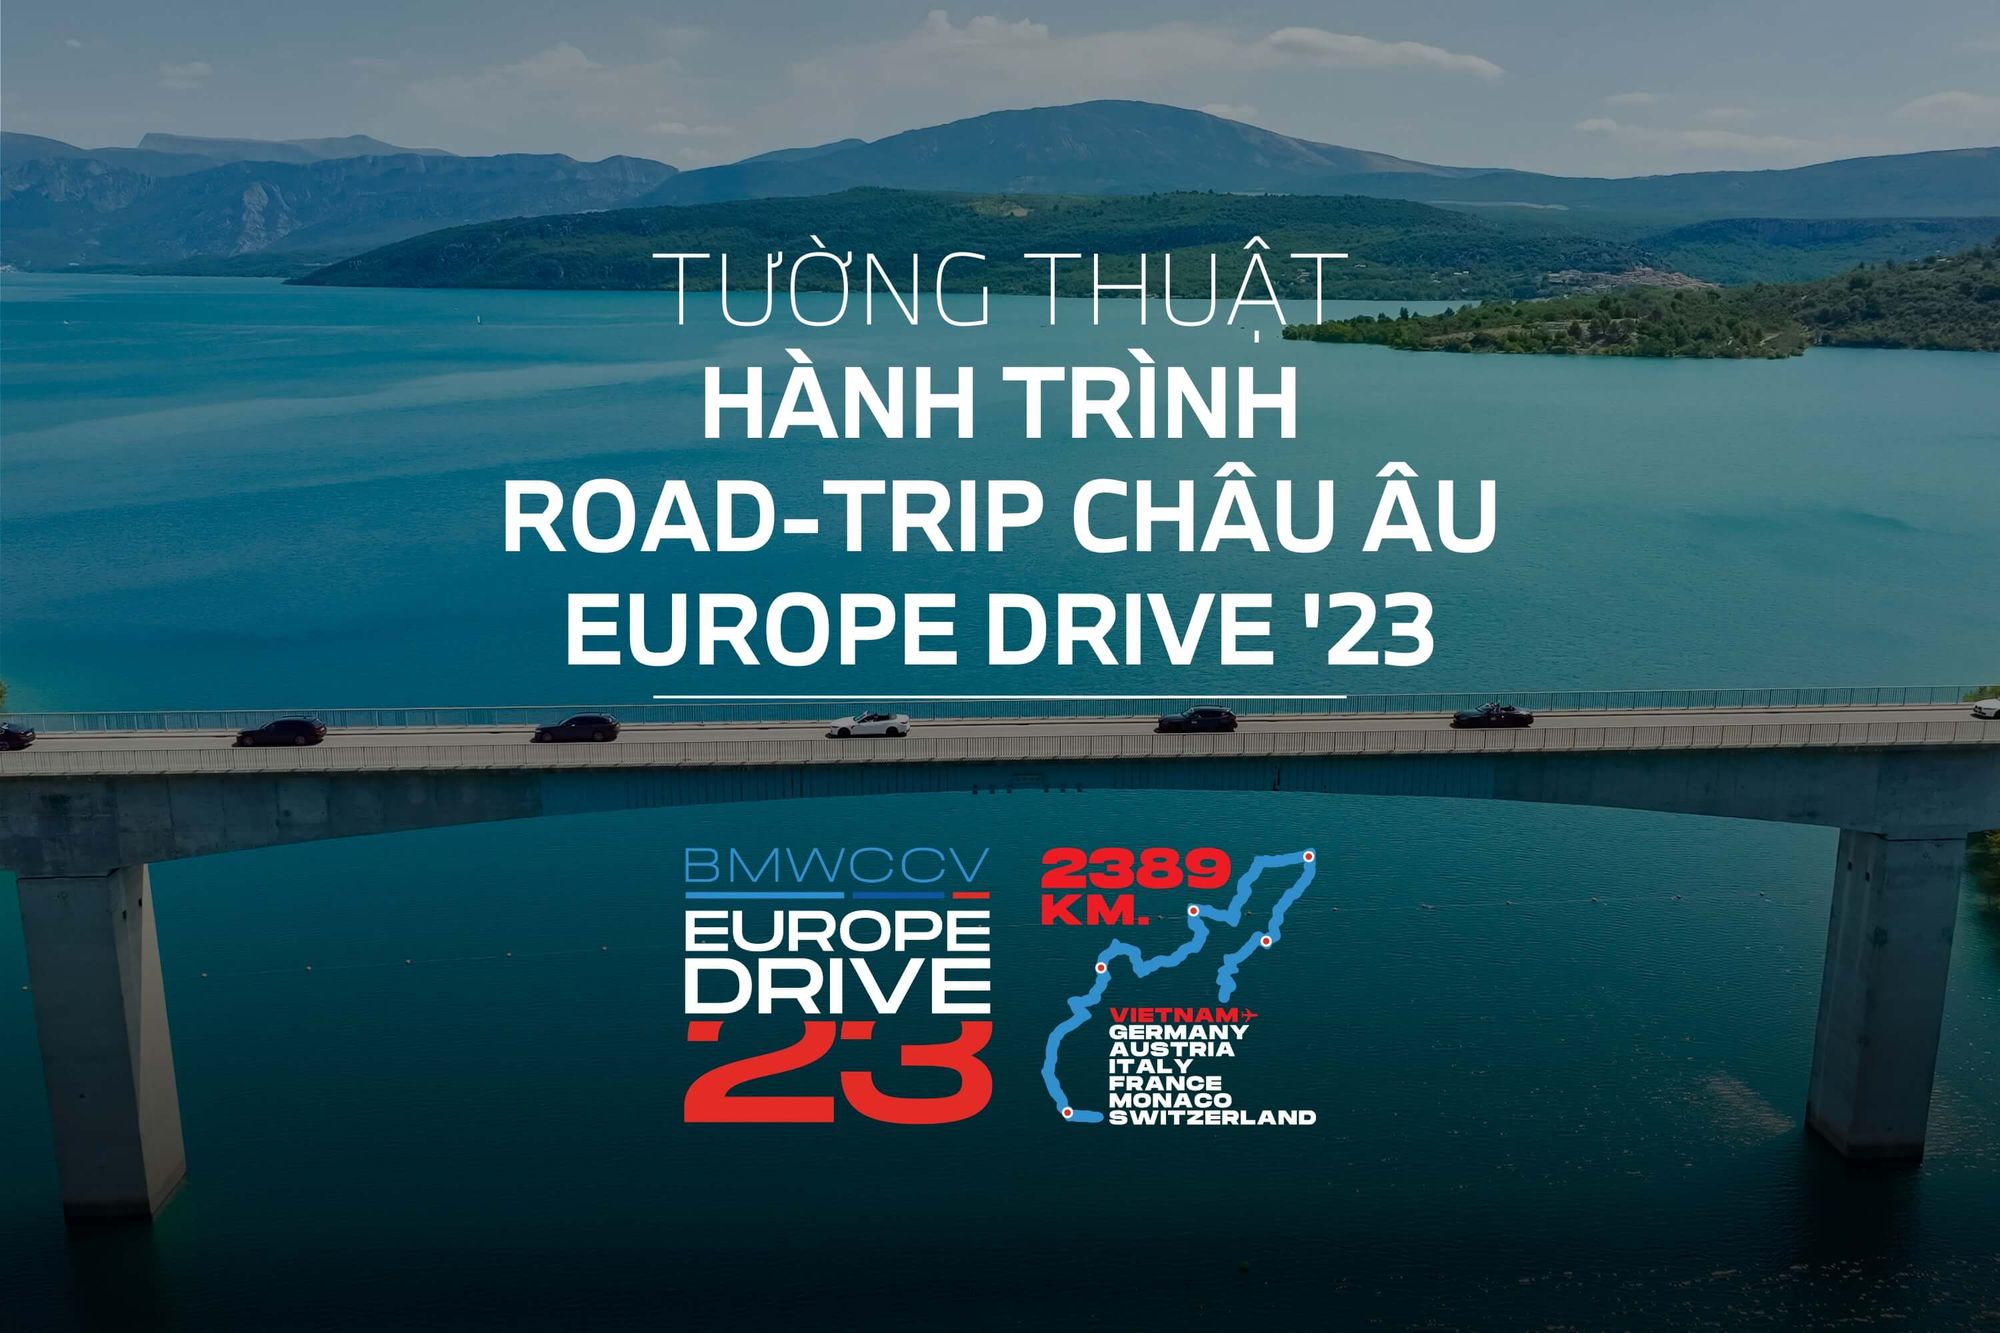 Europe Drive - hành trình 2389km khám phá Châu Âu cùng BMW Car Club Vietnam